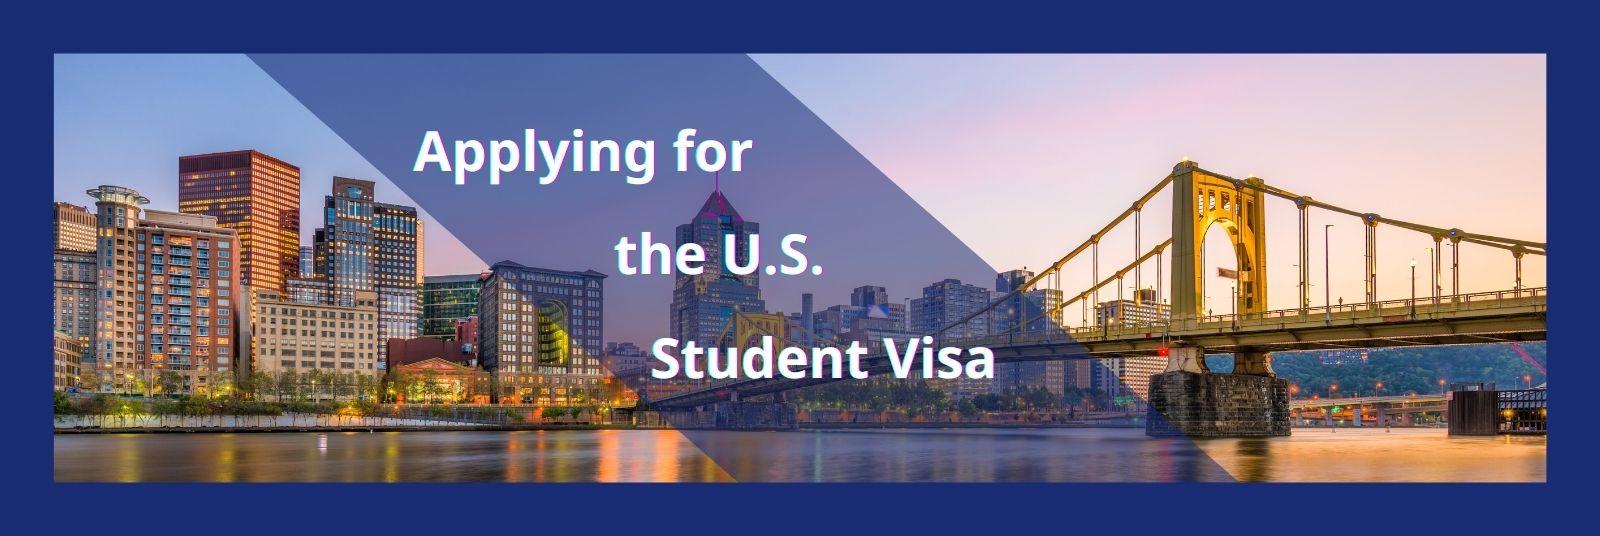 US student visa application details